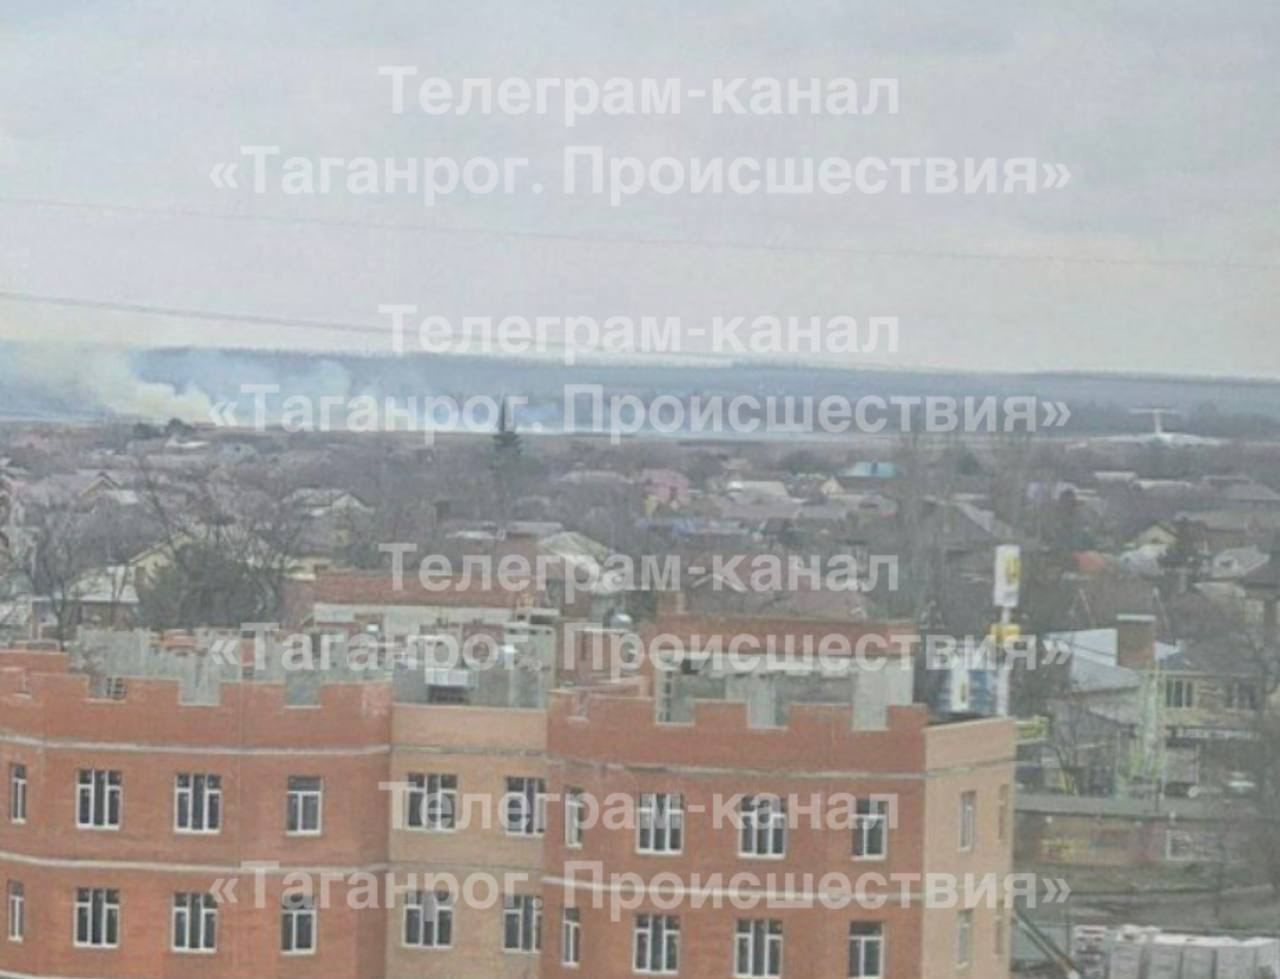 В российском Таганроге произошел мощный взрыв возле аэропорта